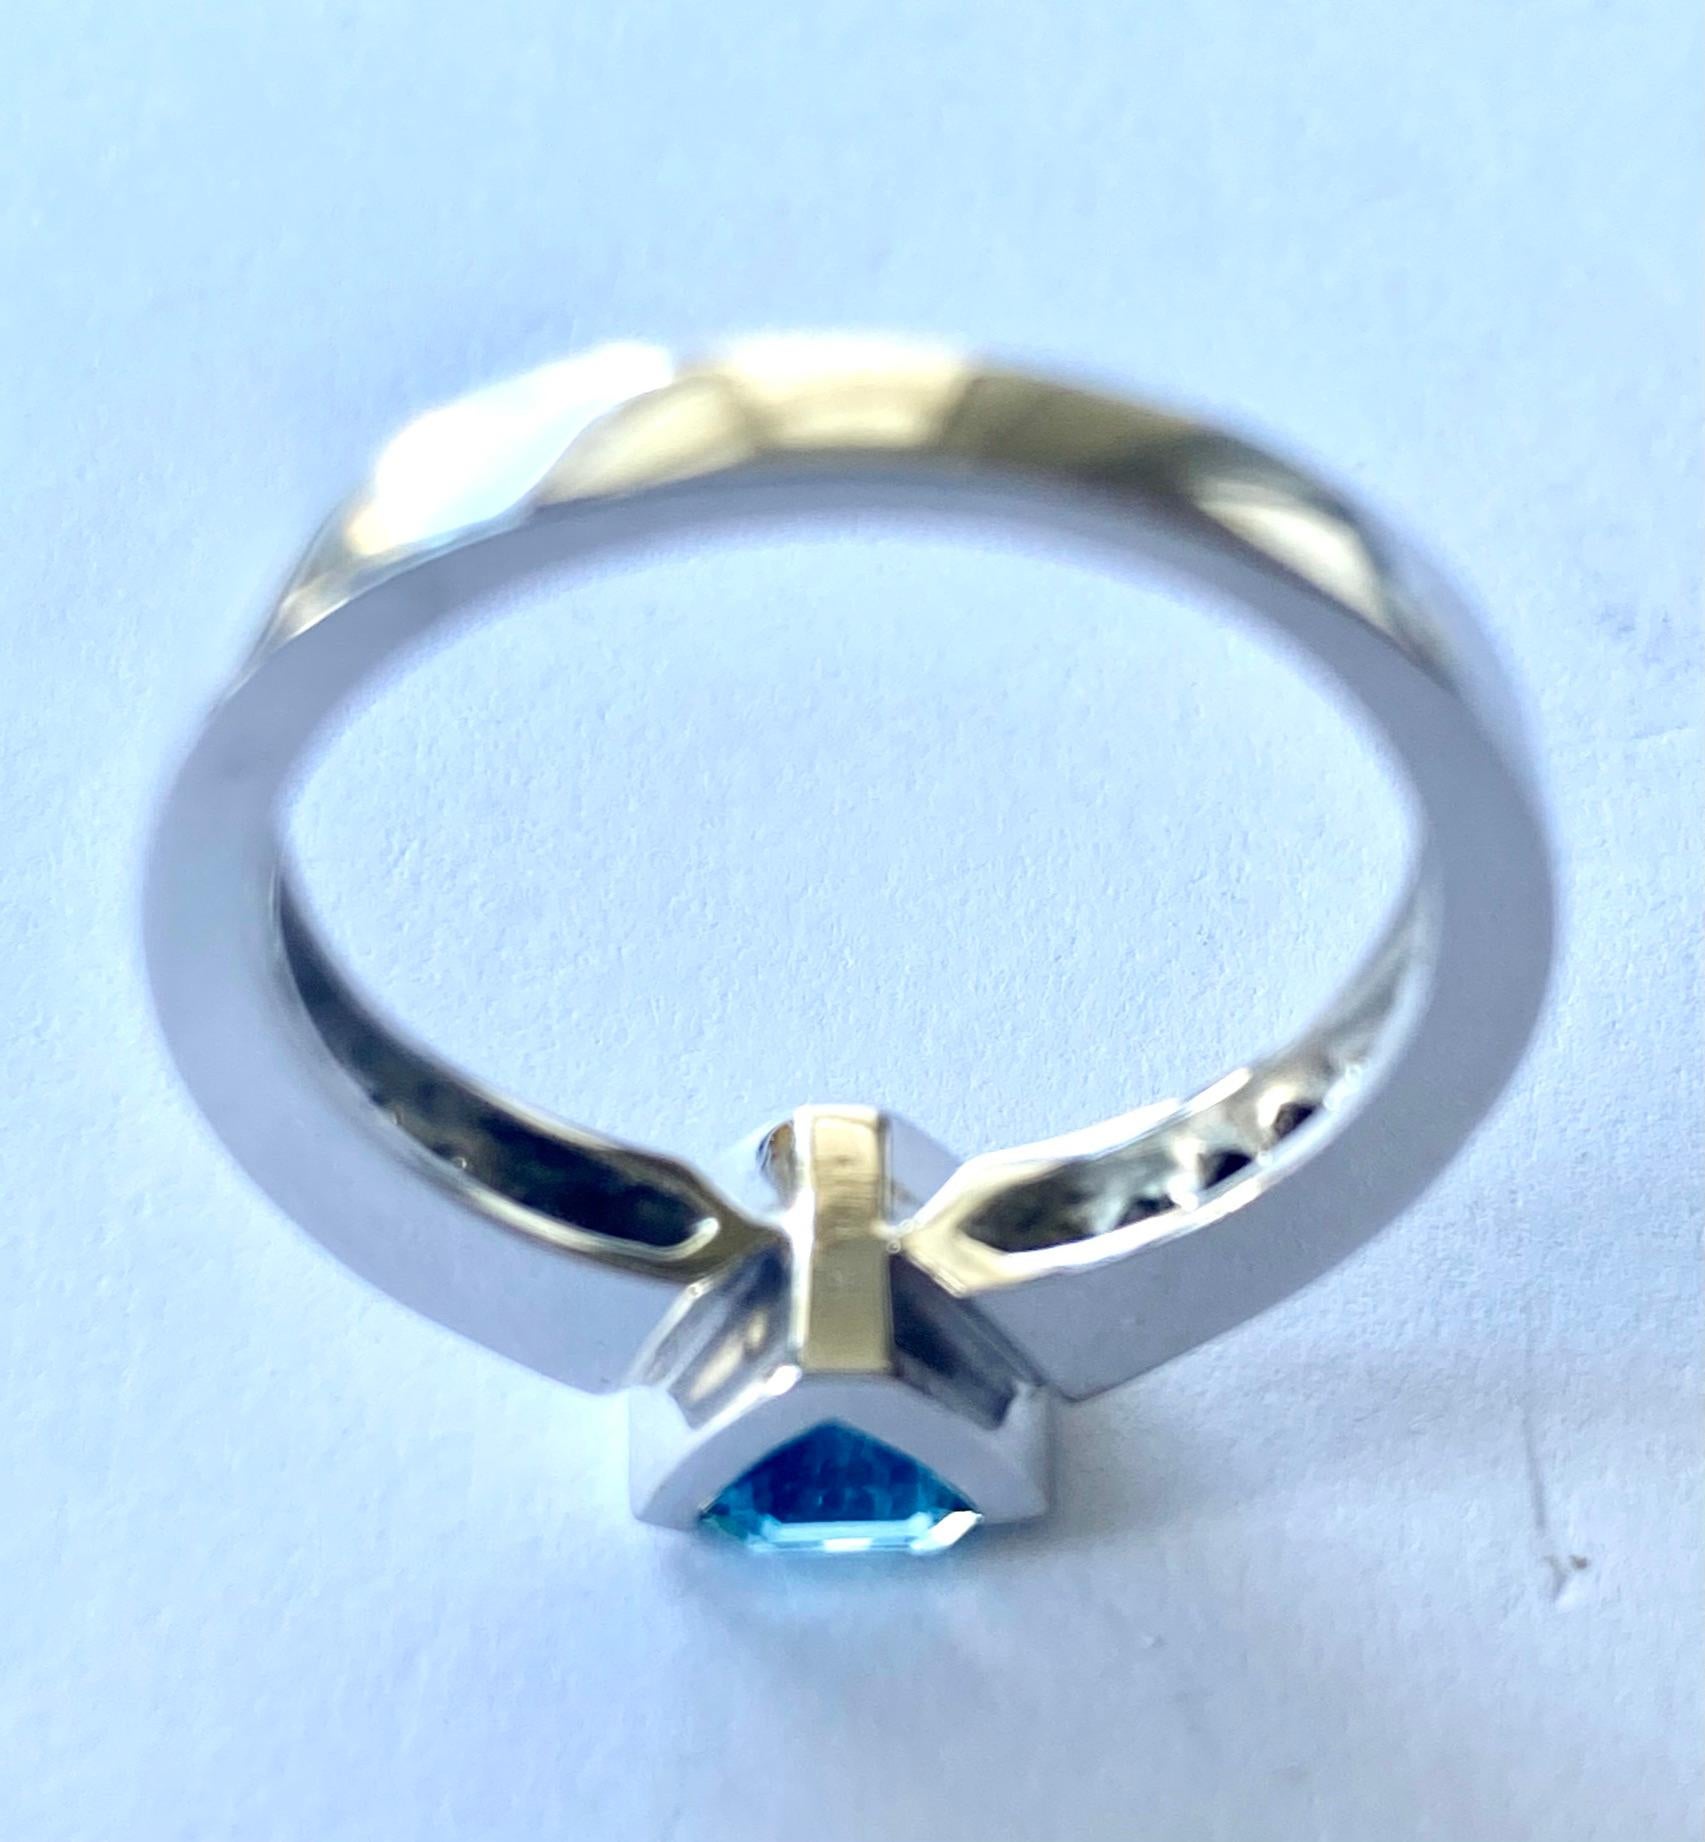 Emerald Cut Aquamarine - Diamonds White Gold Ring, Alberti Gioielli, Valenza - Italy For Sale